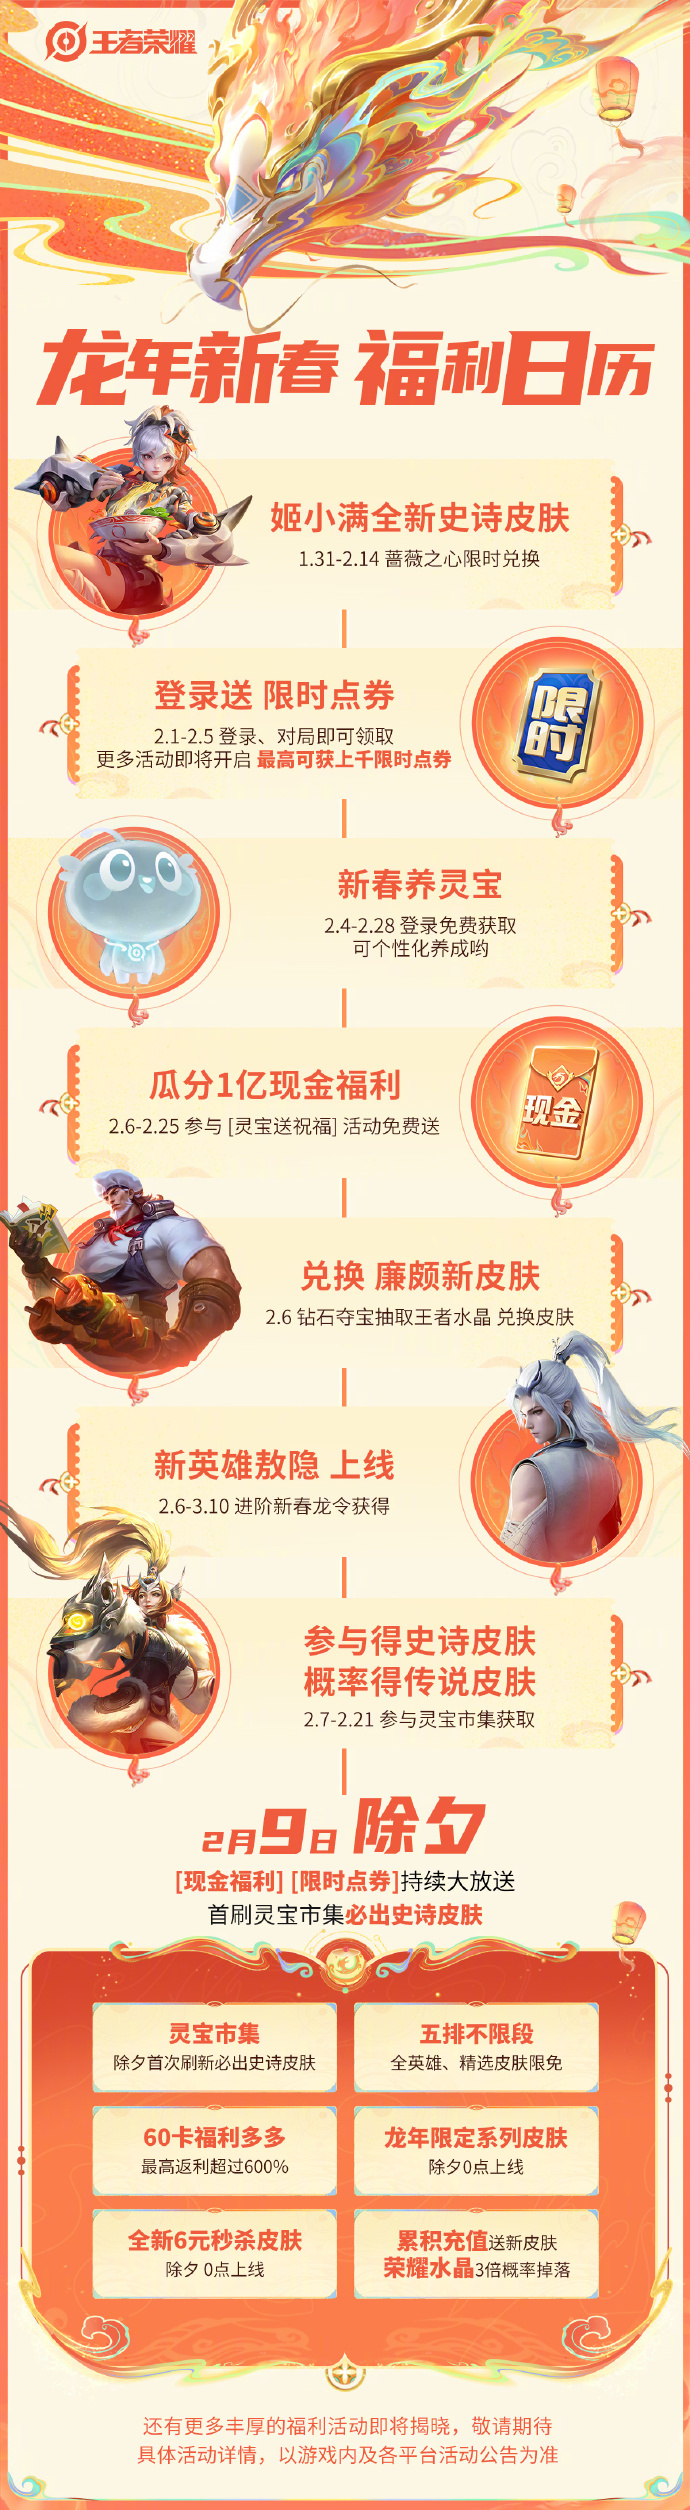 《王者荣耀》龙年新春版本「龙祐千载」预告&福利颁布